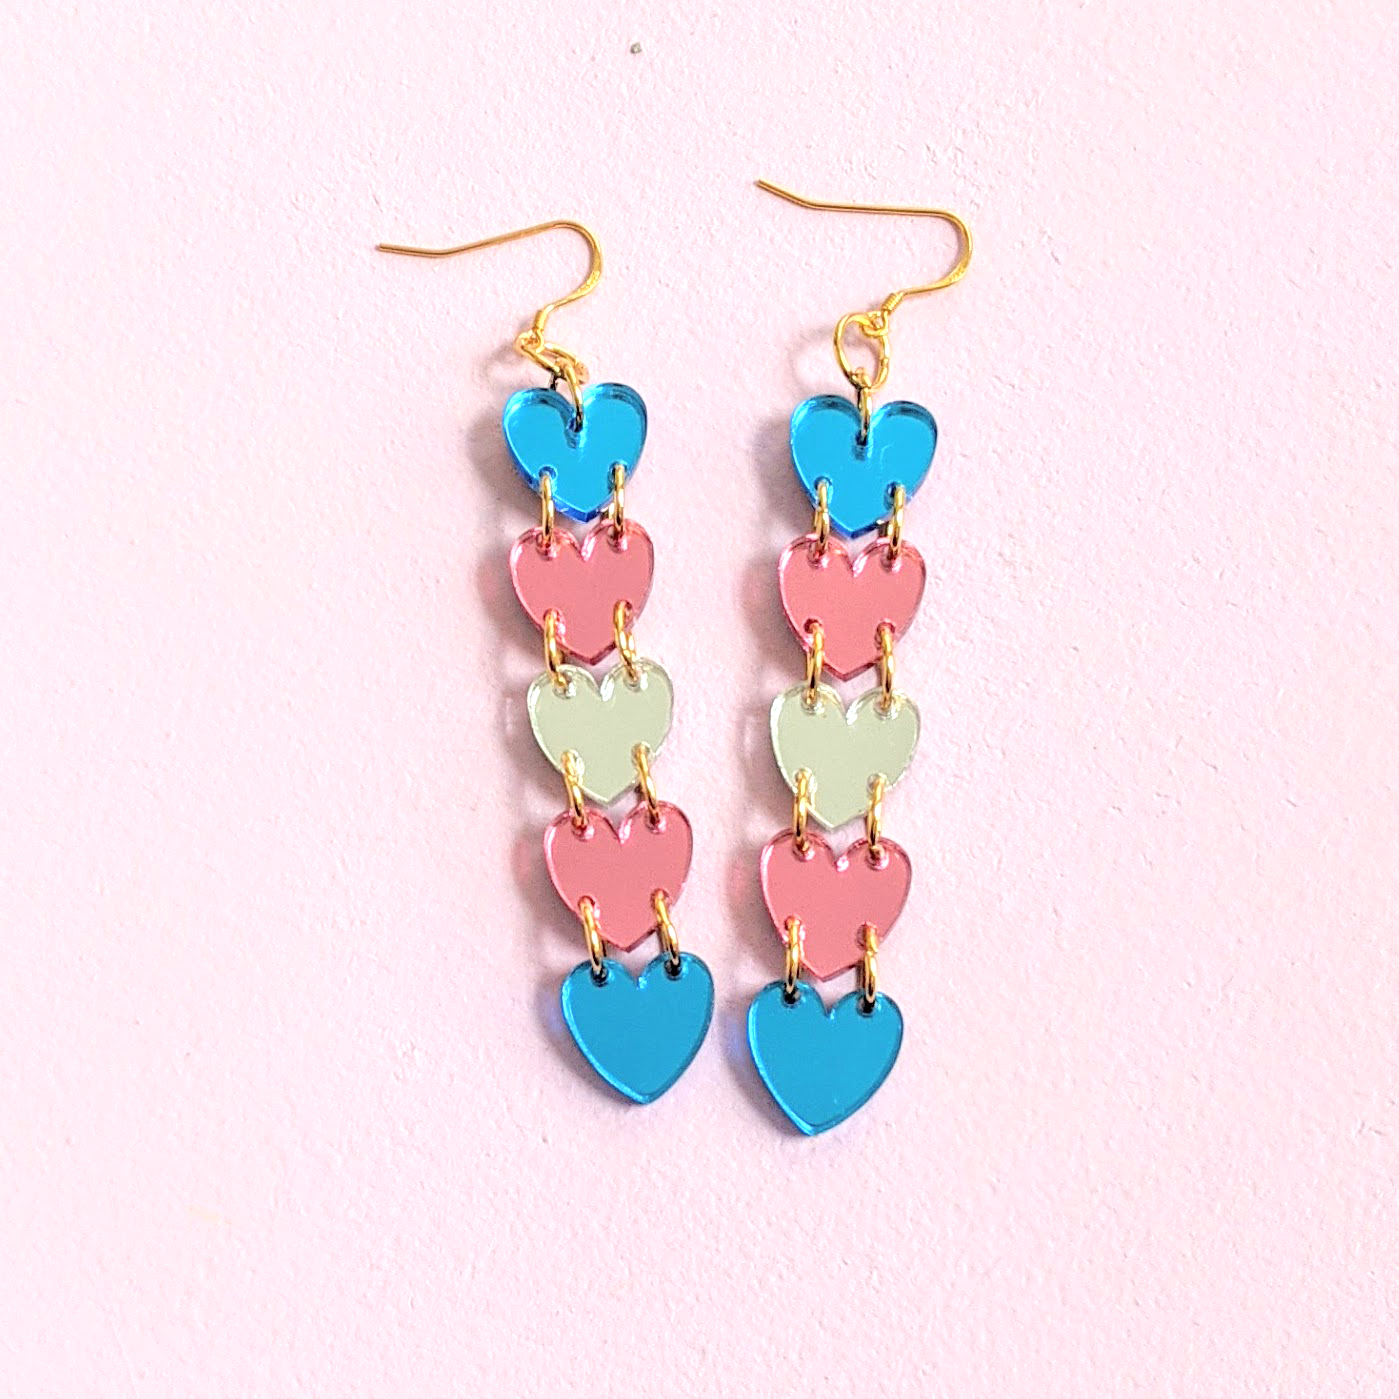 Trans Pride heart earrings